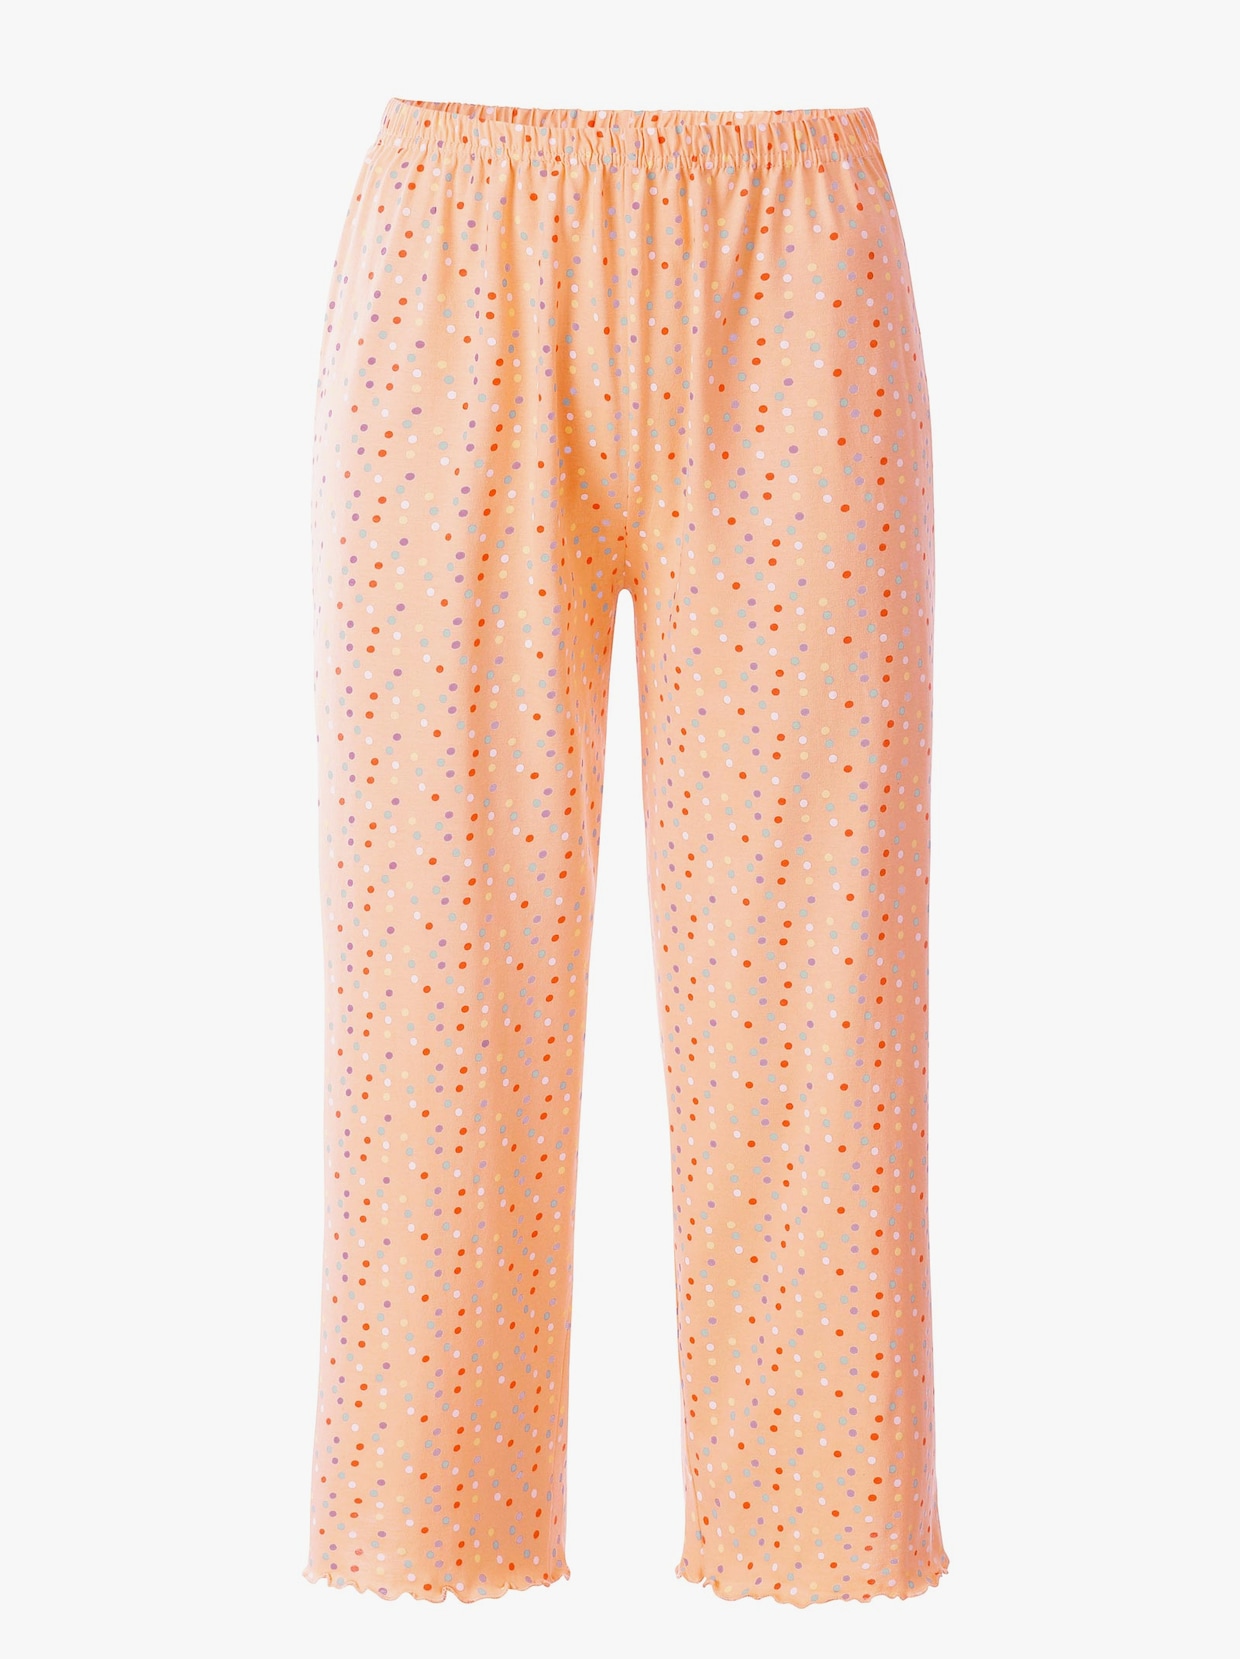 Comtessa Pyjamas - aprikos + gul